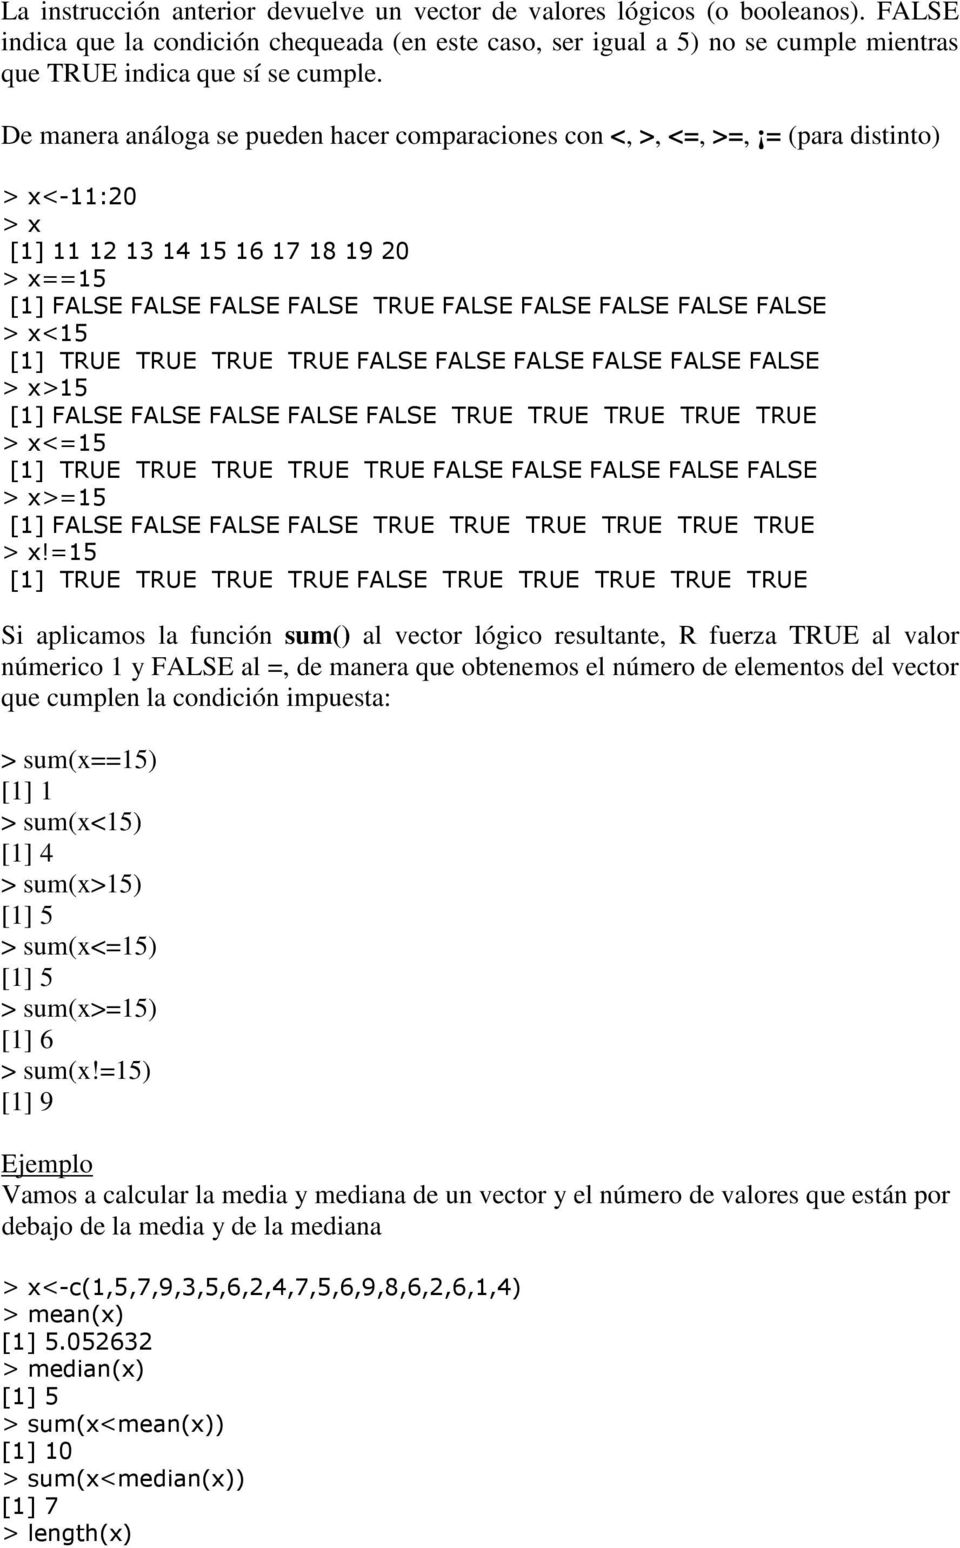 De manera análoga se pueden hacer comparaciones con <, >, <=, >=, = (para distinto) <-11:20 [1] 11 12 13 14 15 16 17 18 19 20 ==15 [1] FALSE FALSE FALSE FALSE TRUE FALSE FALSE FALSE FALSE FALSE <15